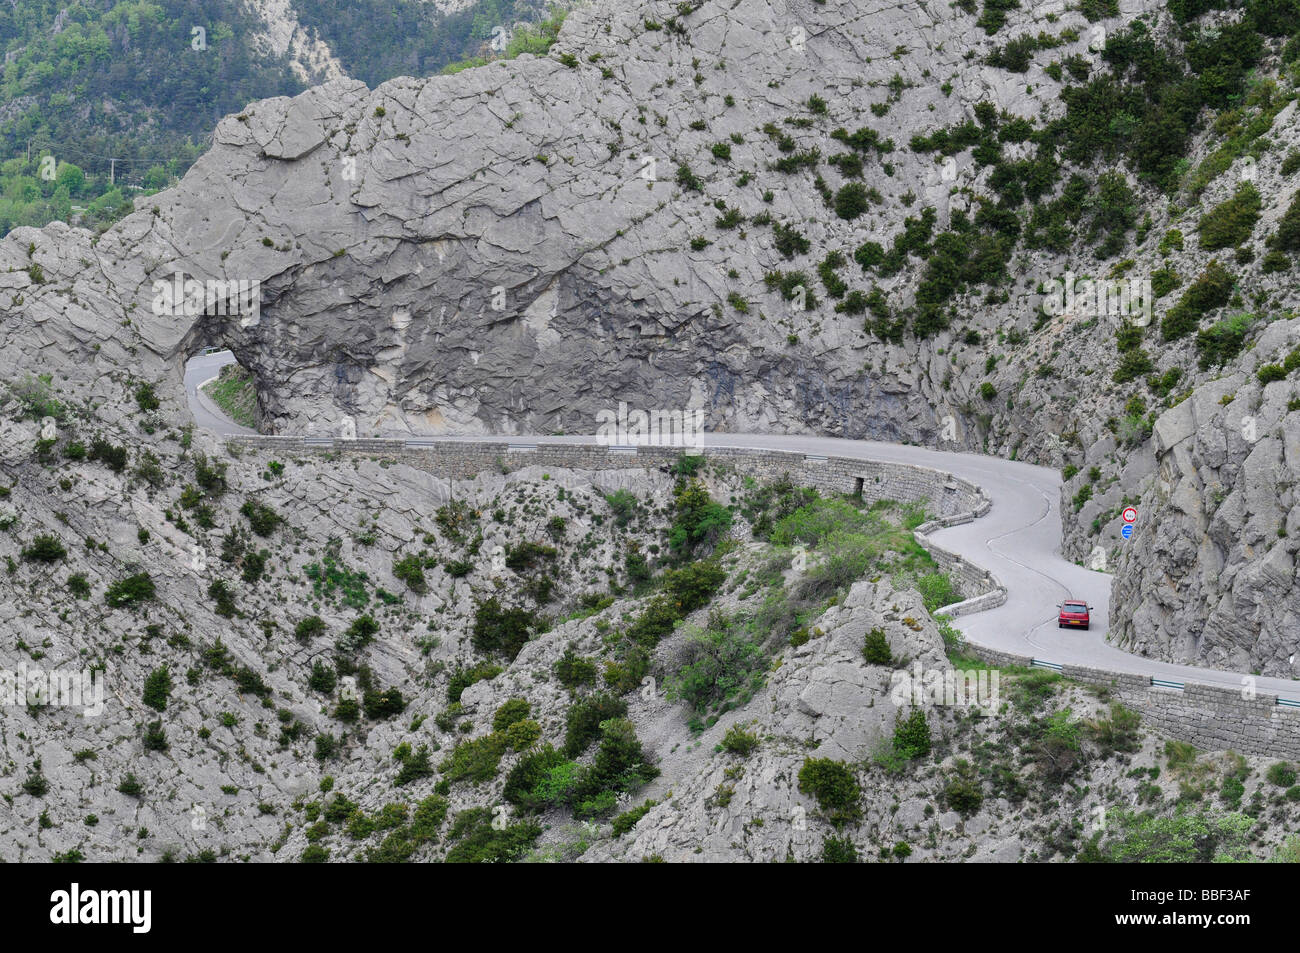 Autofahren auf der berühmten "Route Napoleon", eine kurvenreiche Panoramastraße in einer Schlucht in Südfrankreich. Stockfoto